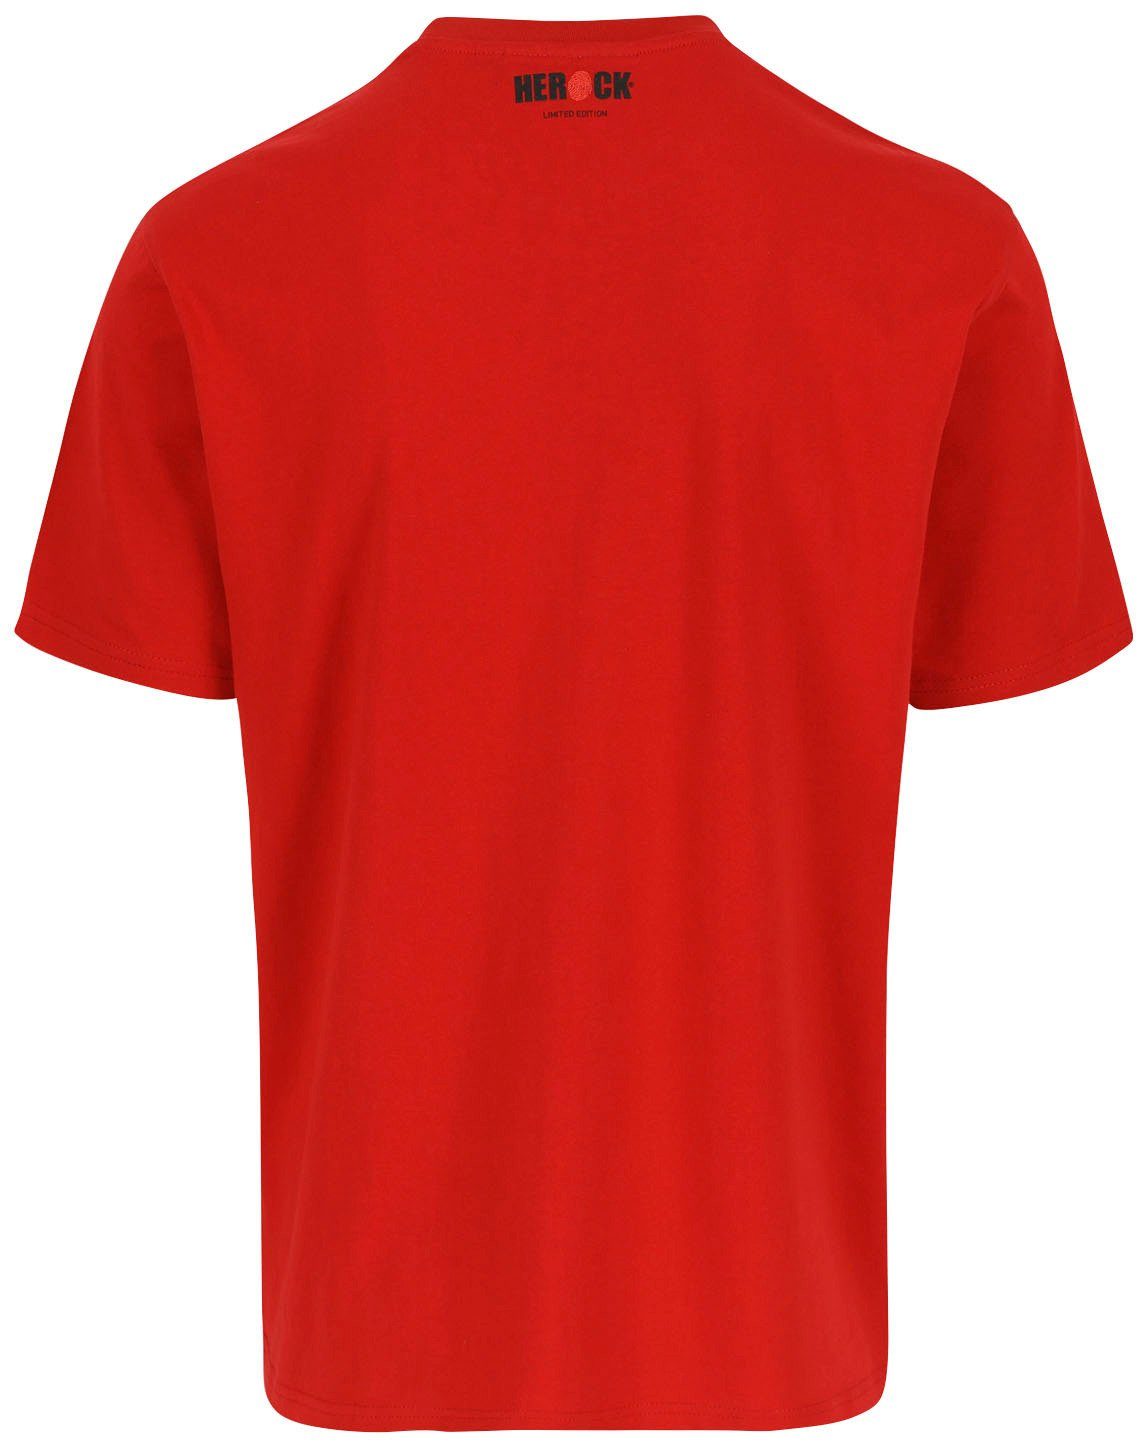 Farben Herock Worker verschiedene erhältlich in T-Shirt Limited Edition,